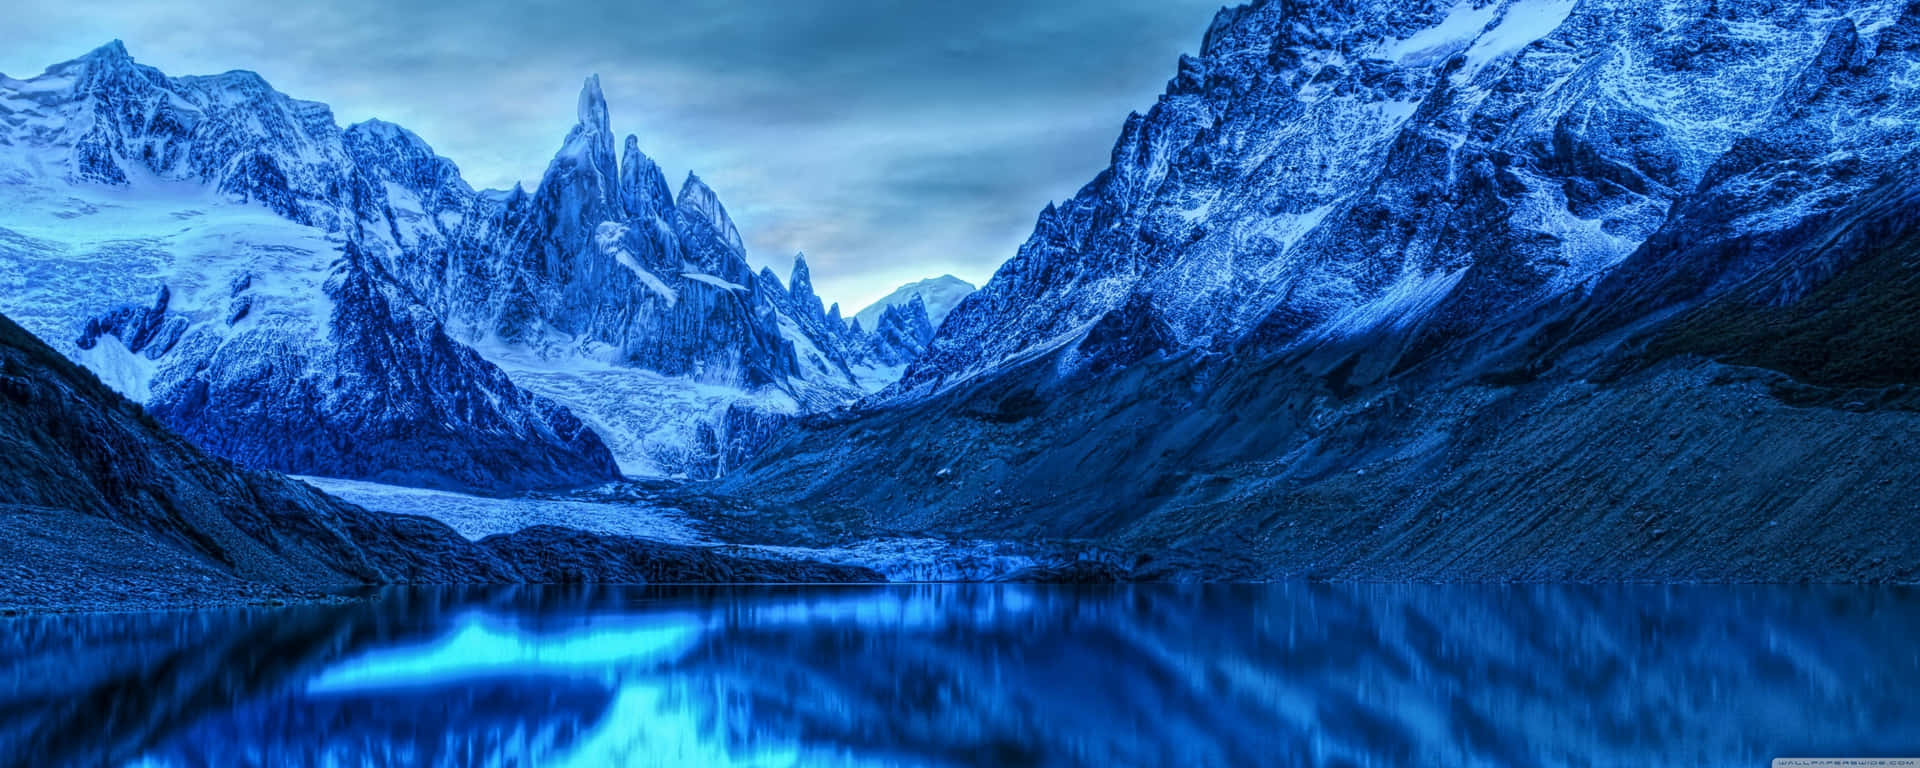 Ettblått Bergsområde Med En Sjö I Bakgrunden Wallpaper